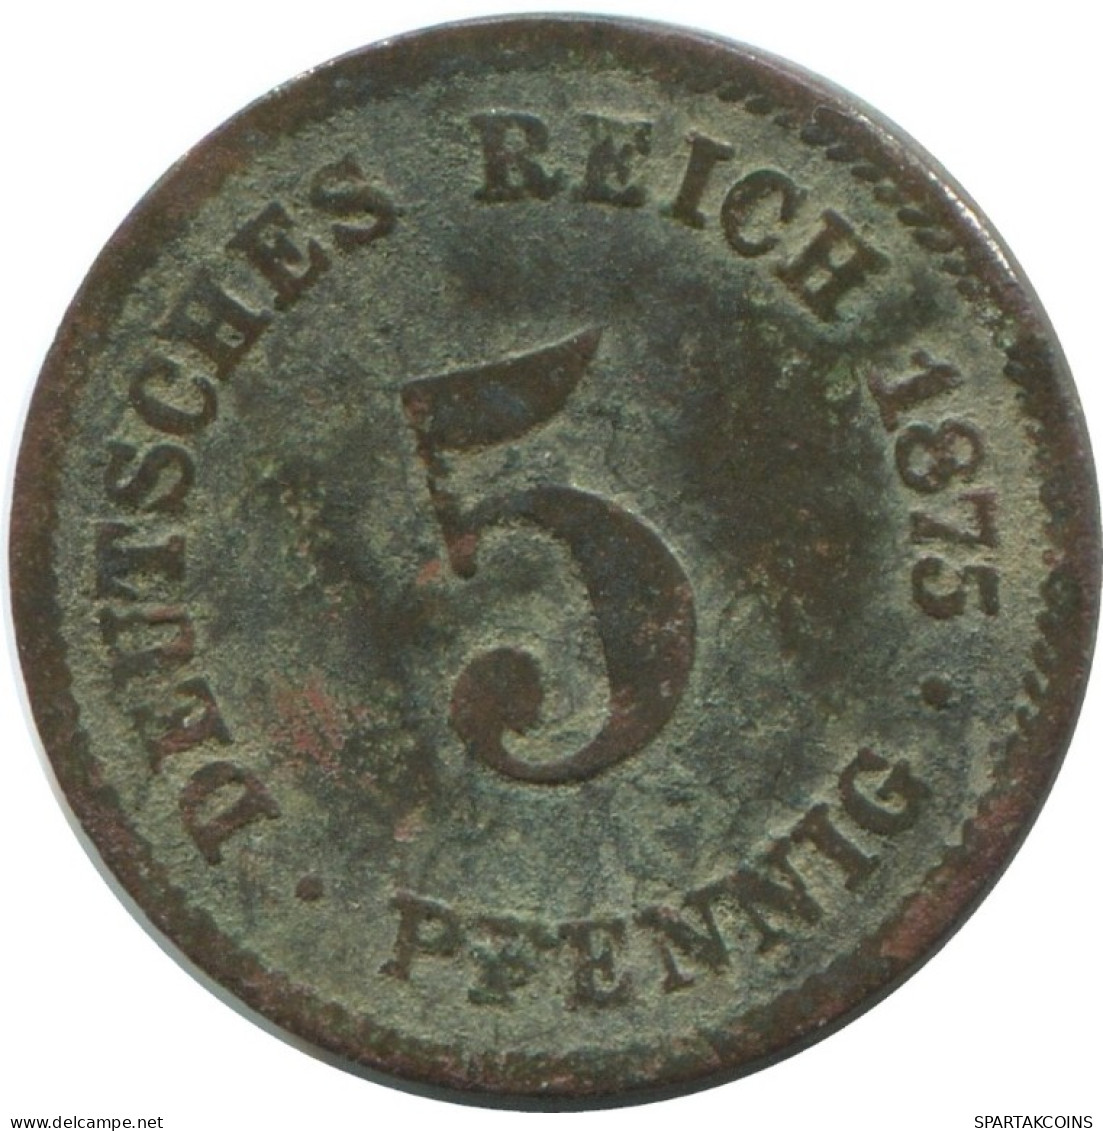 5 PFENNIG 1875 C GERMANY Coin #AE648.U.A - 5 Pfennig